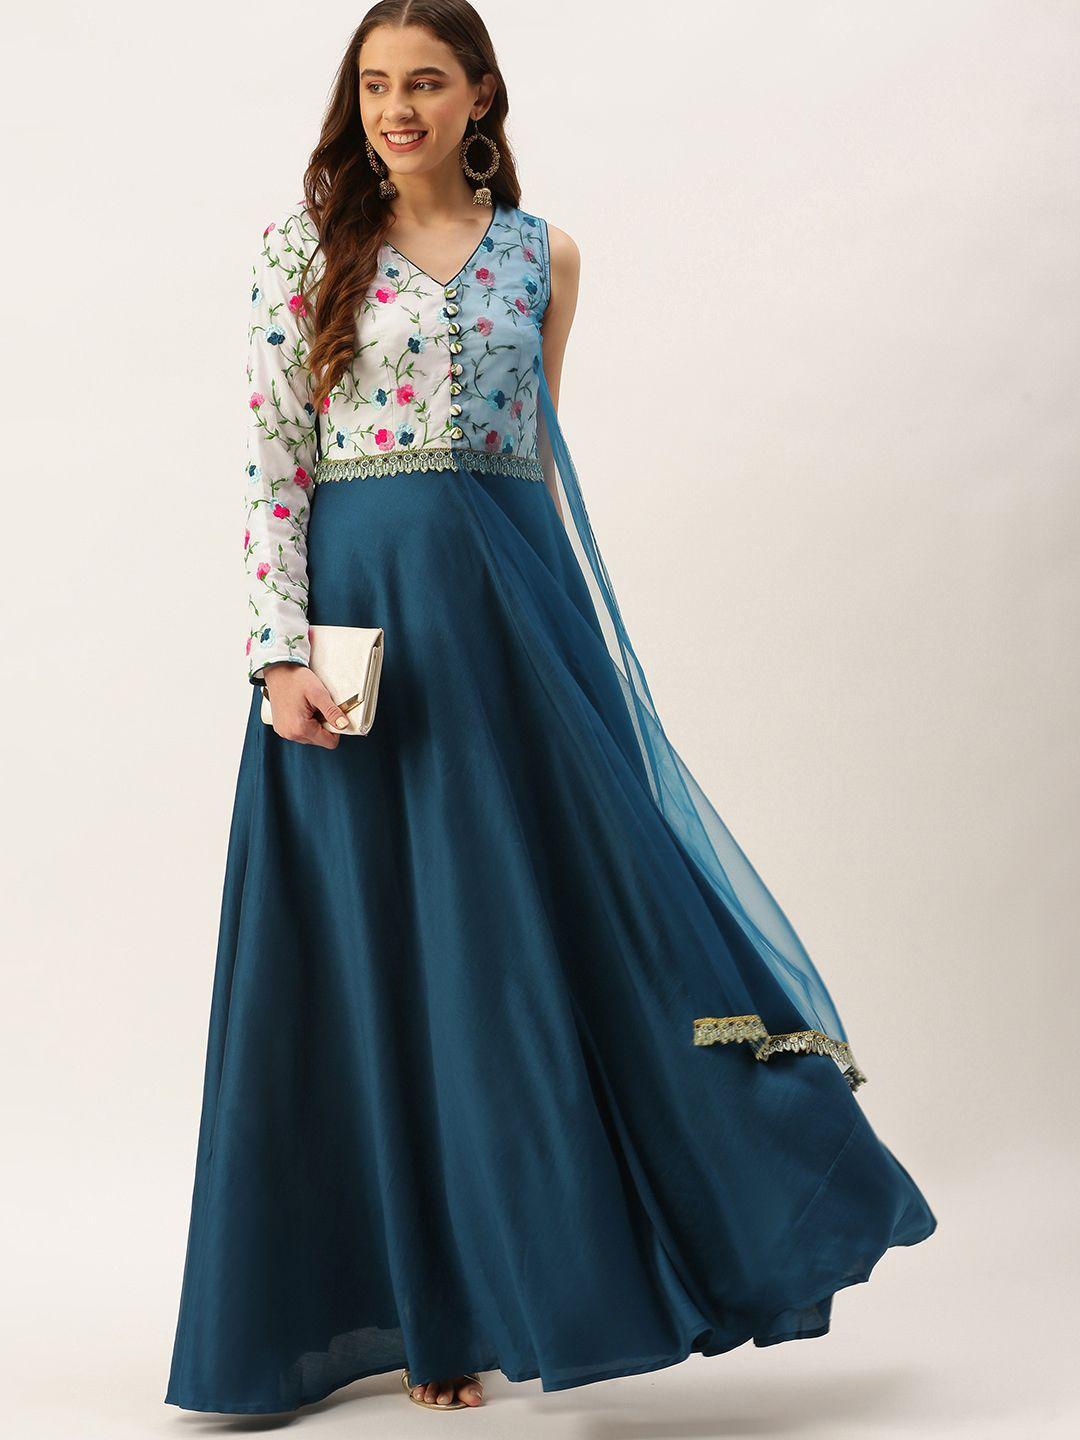 ethnovog blue floral embroidered ethnic maxi dress